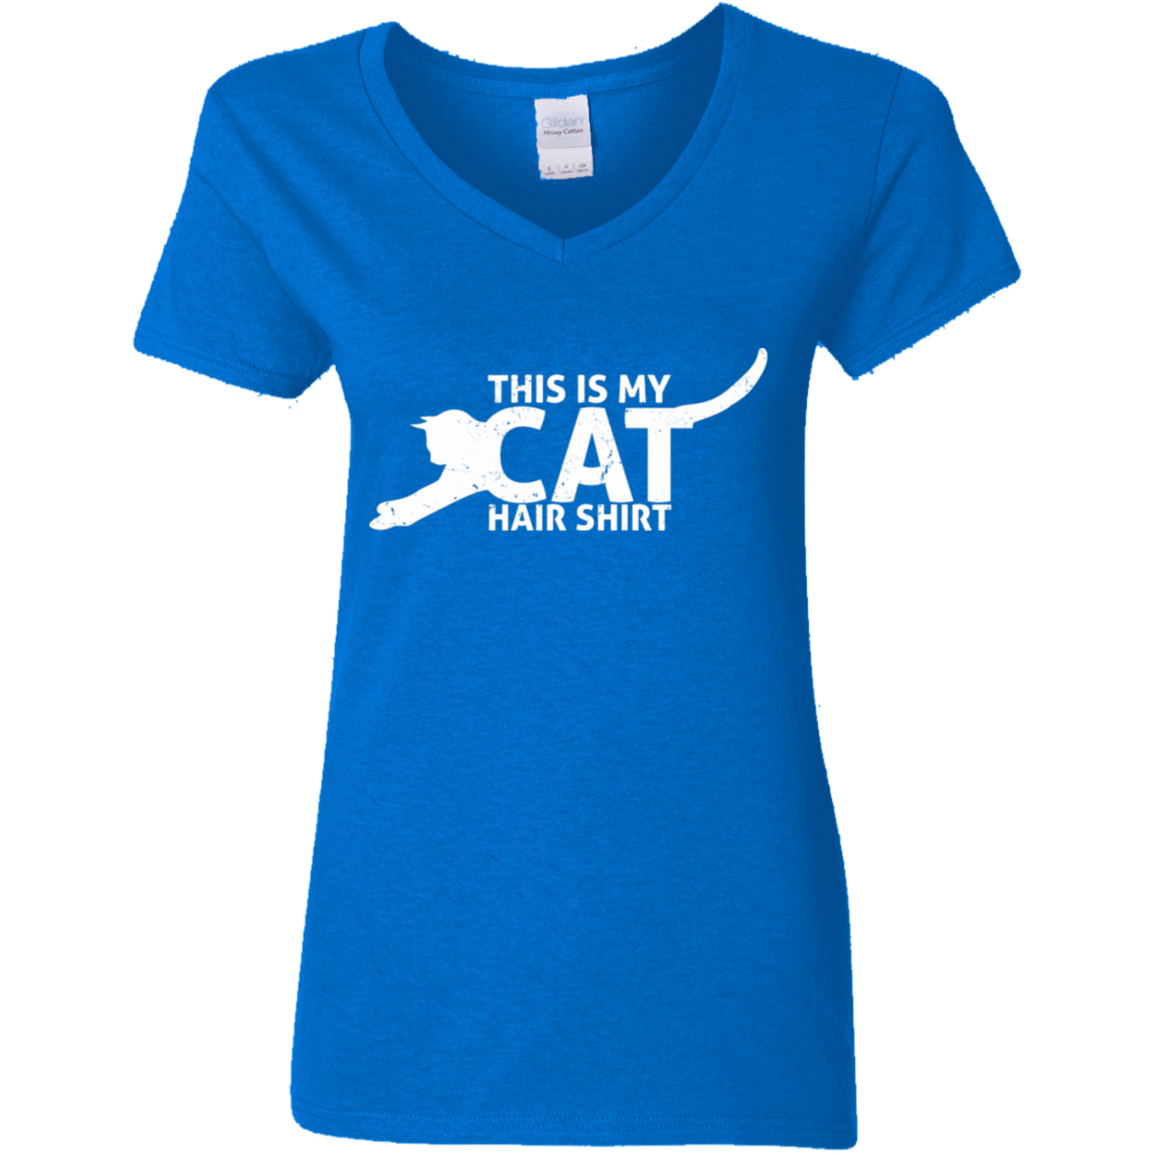 Cat Hair Shirt - Ladies V Neck.